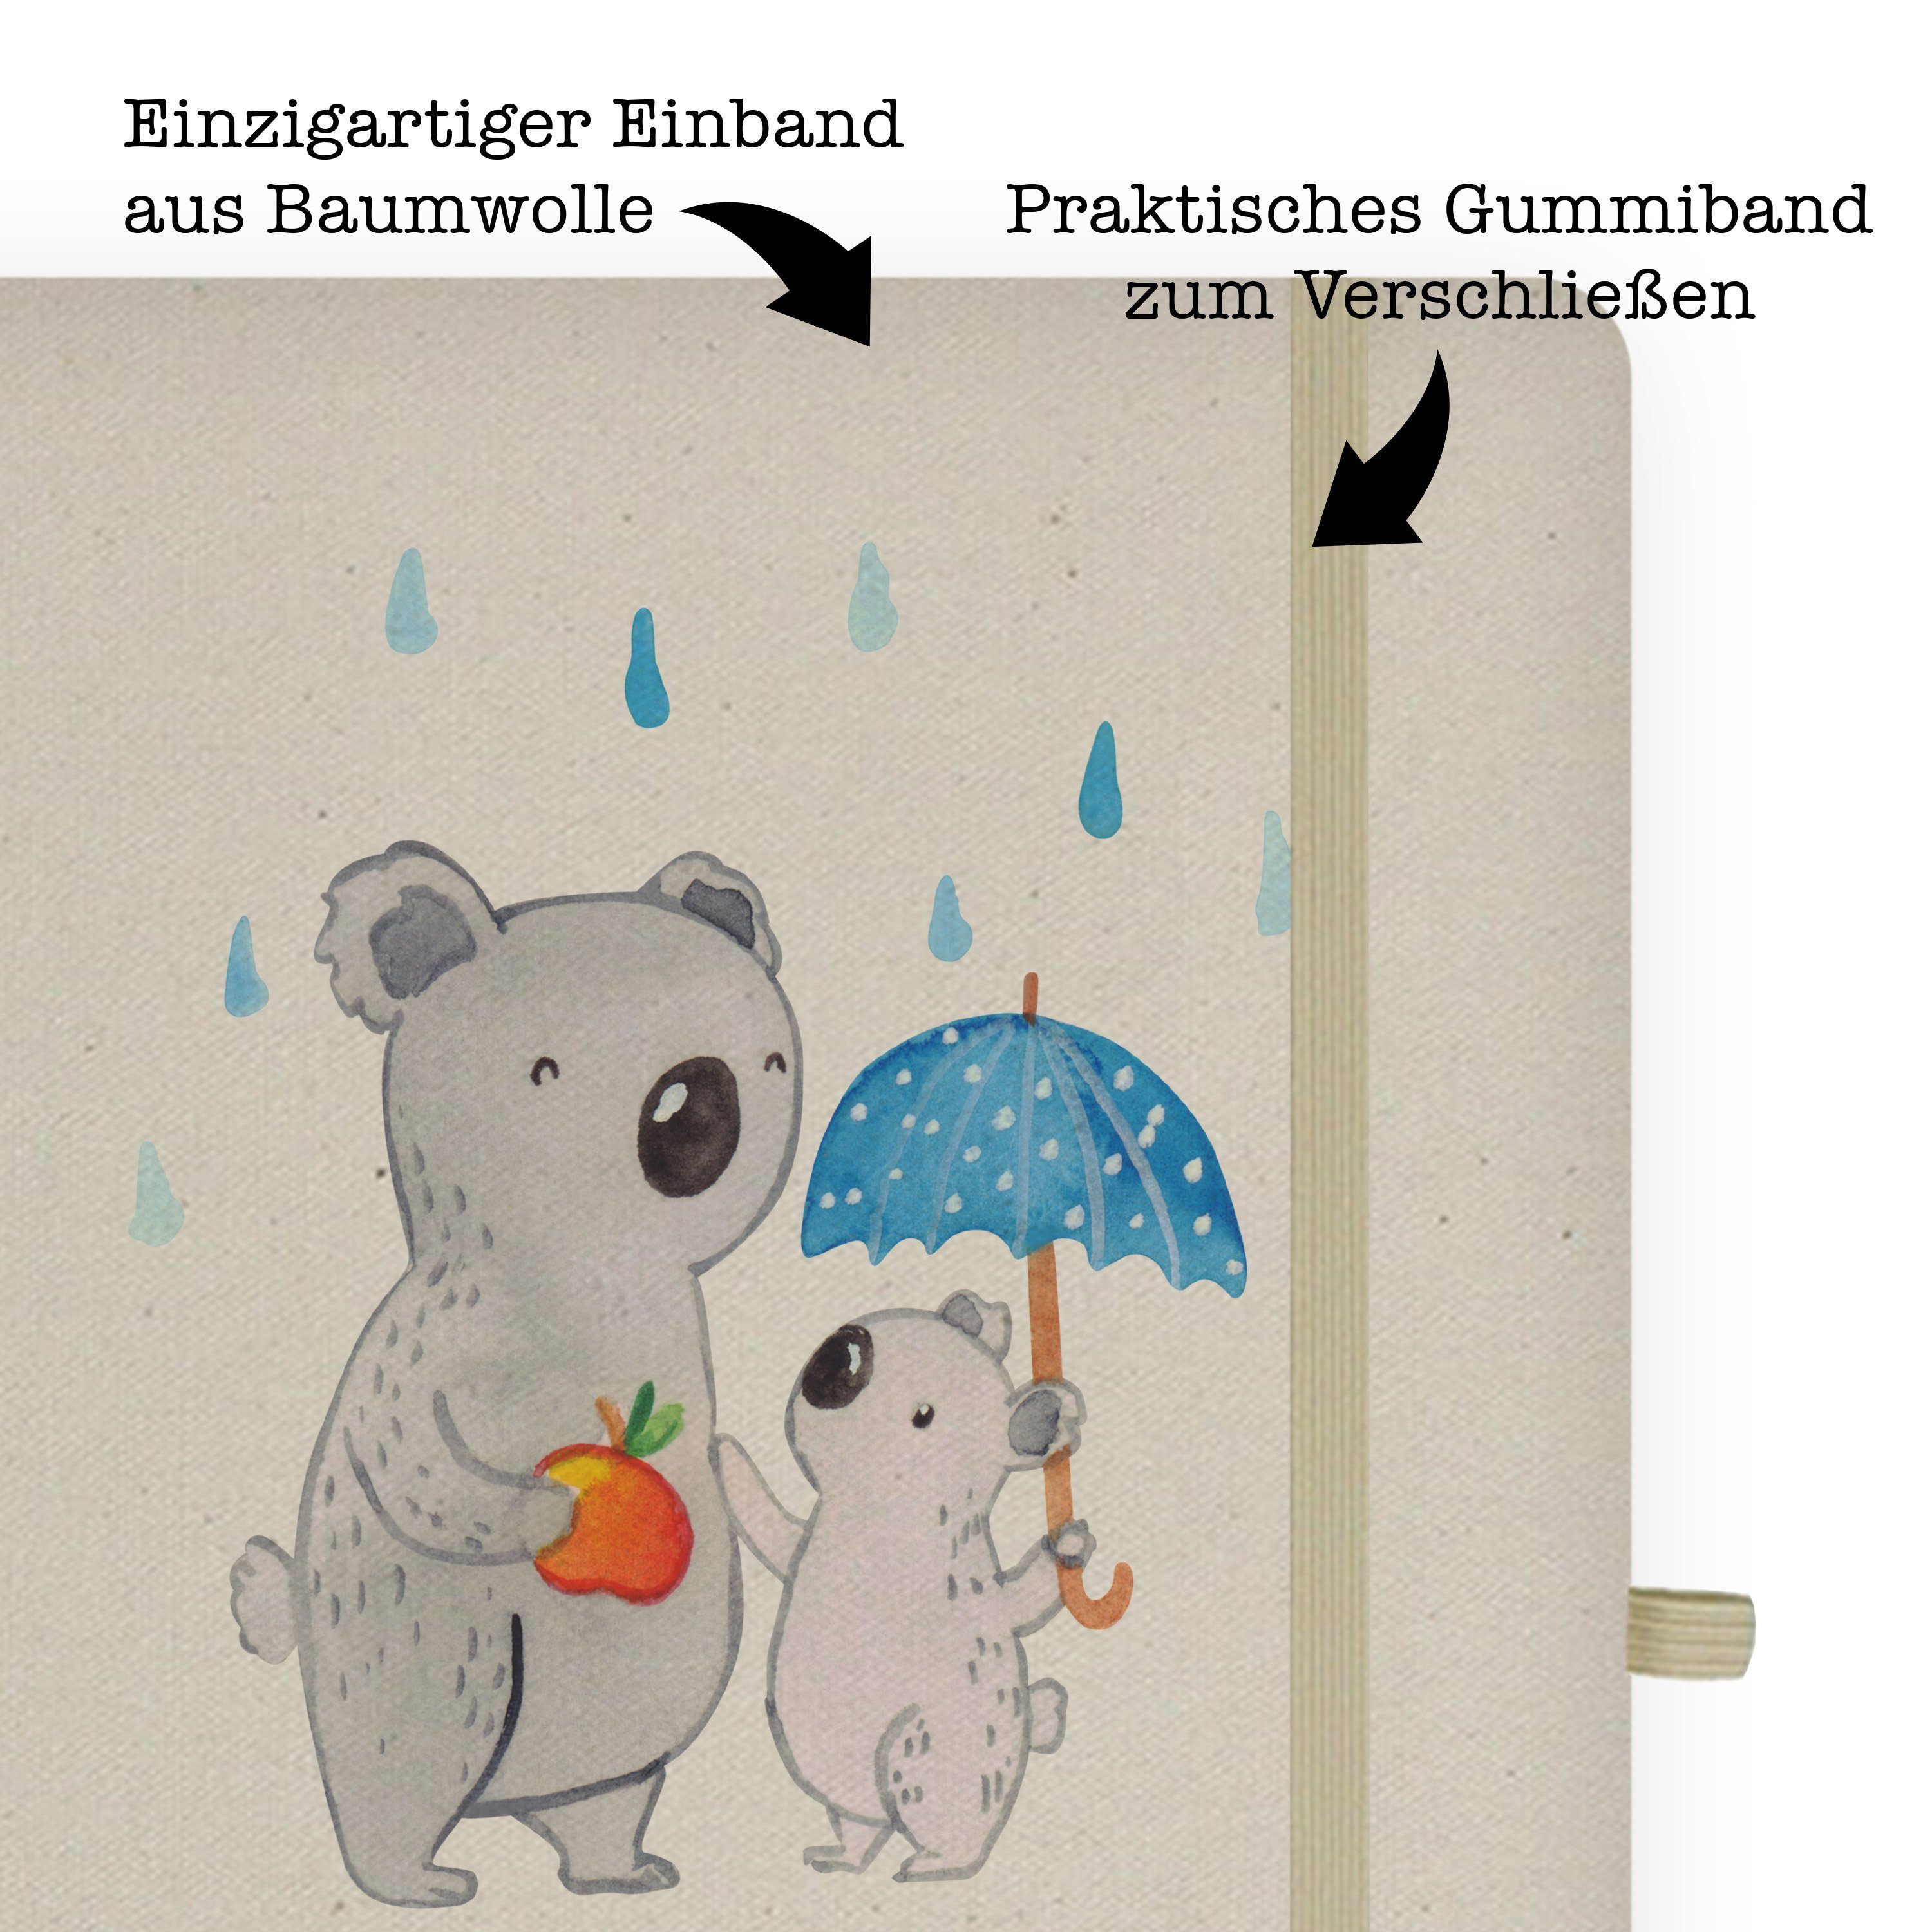 - mit Notizbuch Tagesvater - Geschenk, Mrs. Panda Herz Mr. & Kollegin, Panda Mr. Kladde, Mrs. Schre & Transparent